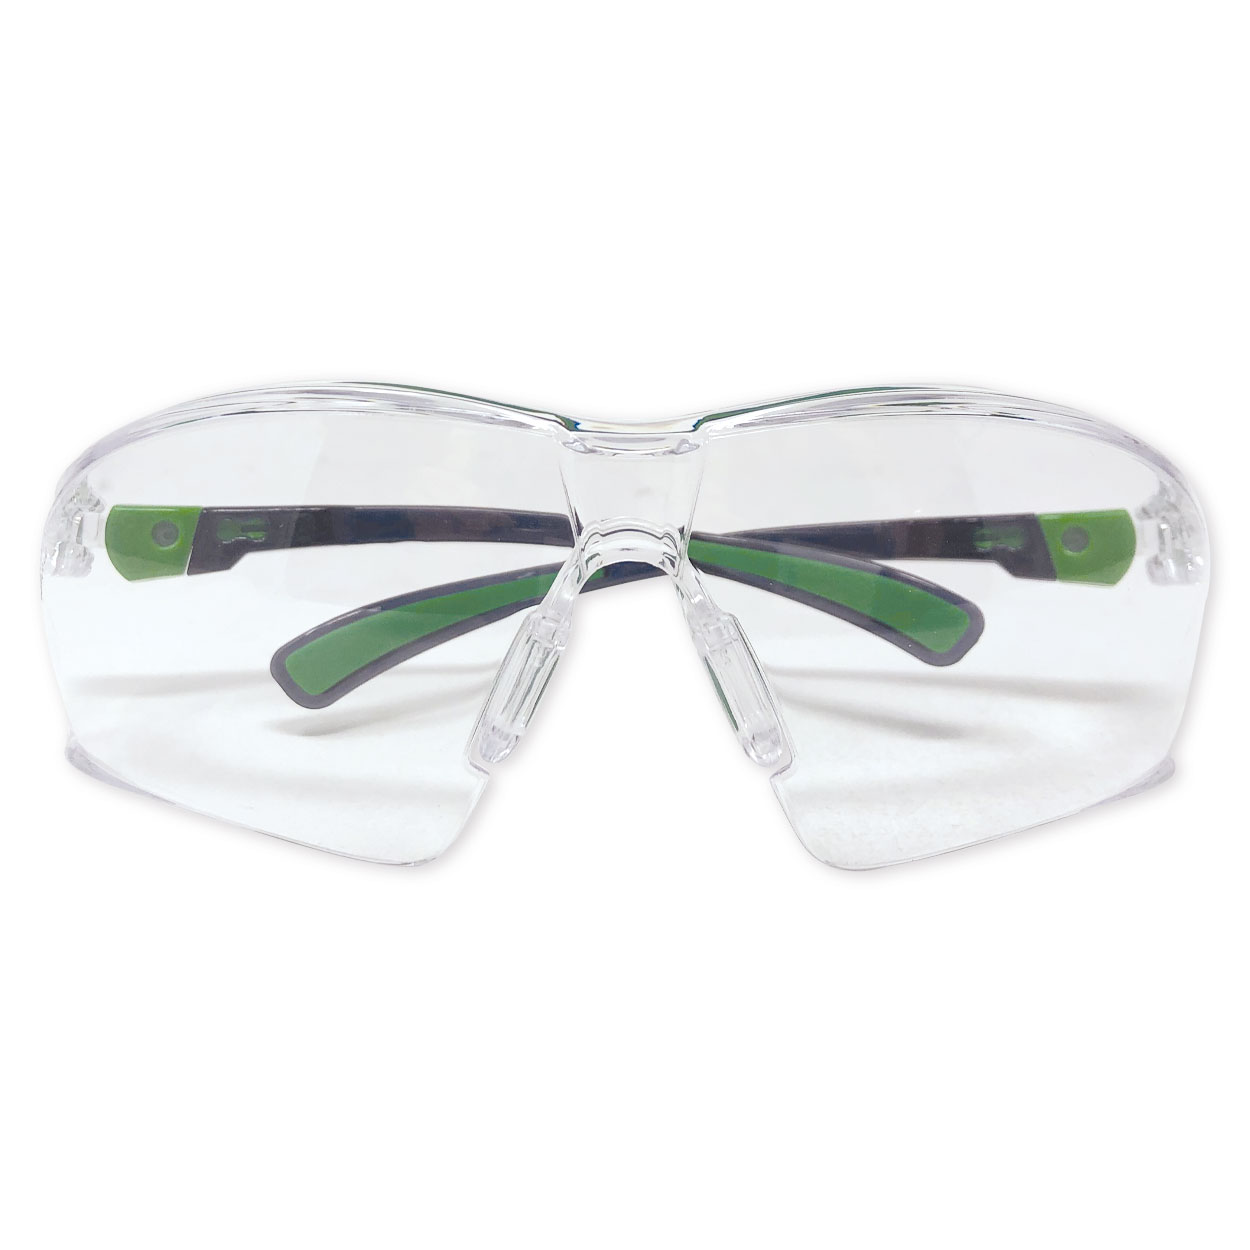 UNIVET 506 UP Schutzbrille - Clear 4, Farbrahmen in schwarz/grün